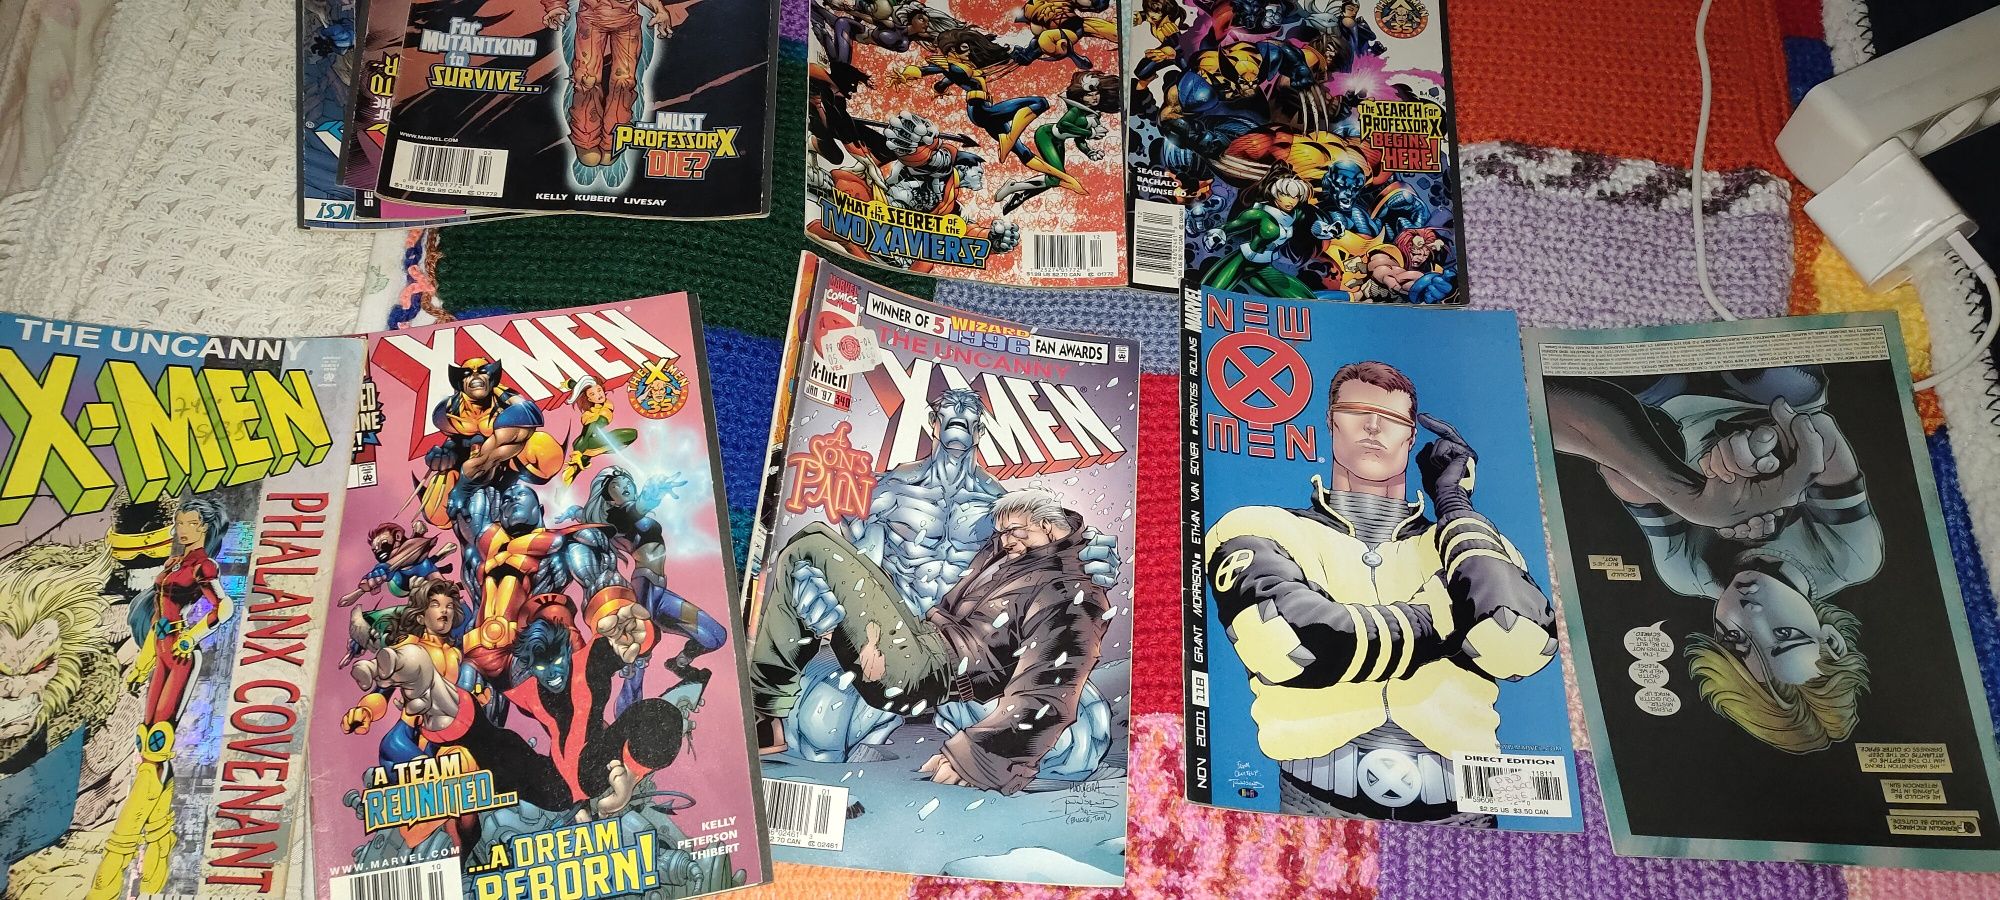 X-men comics marvel